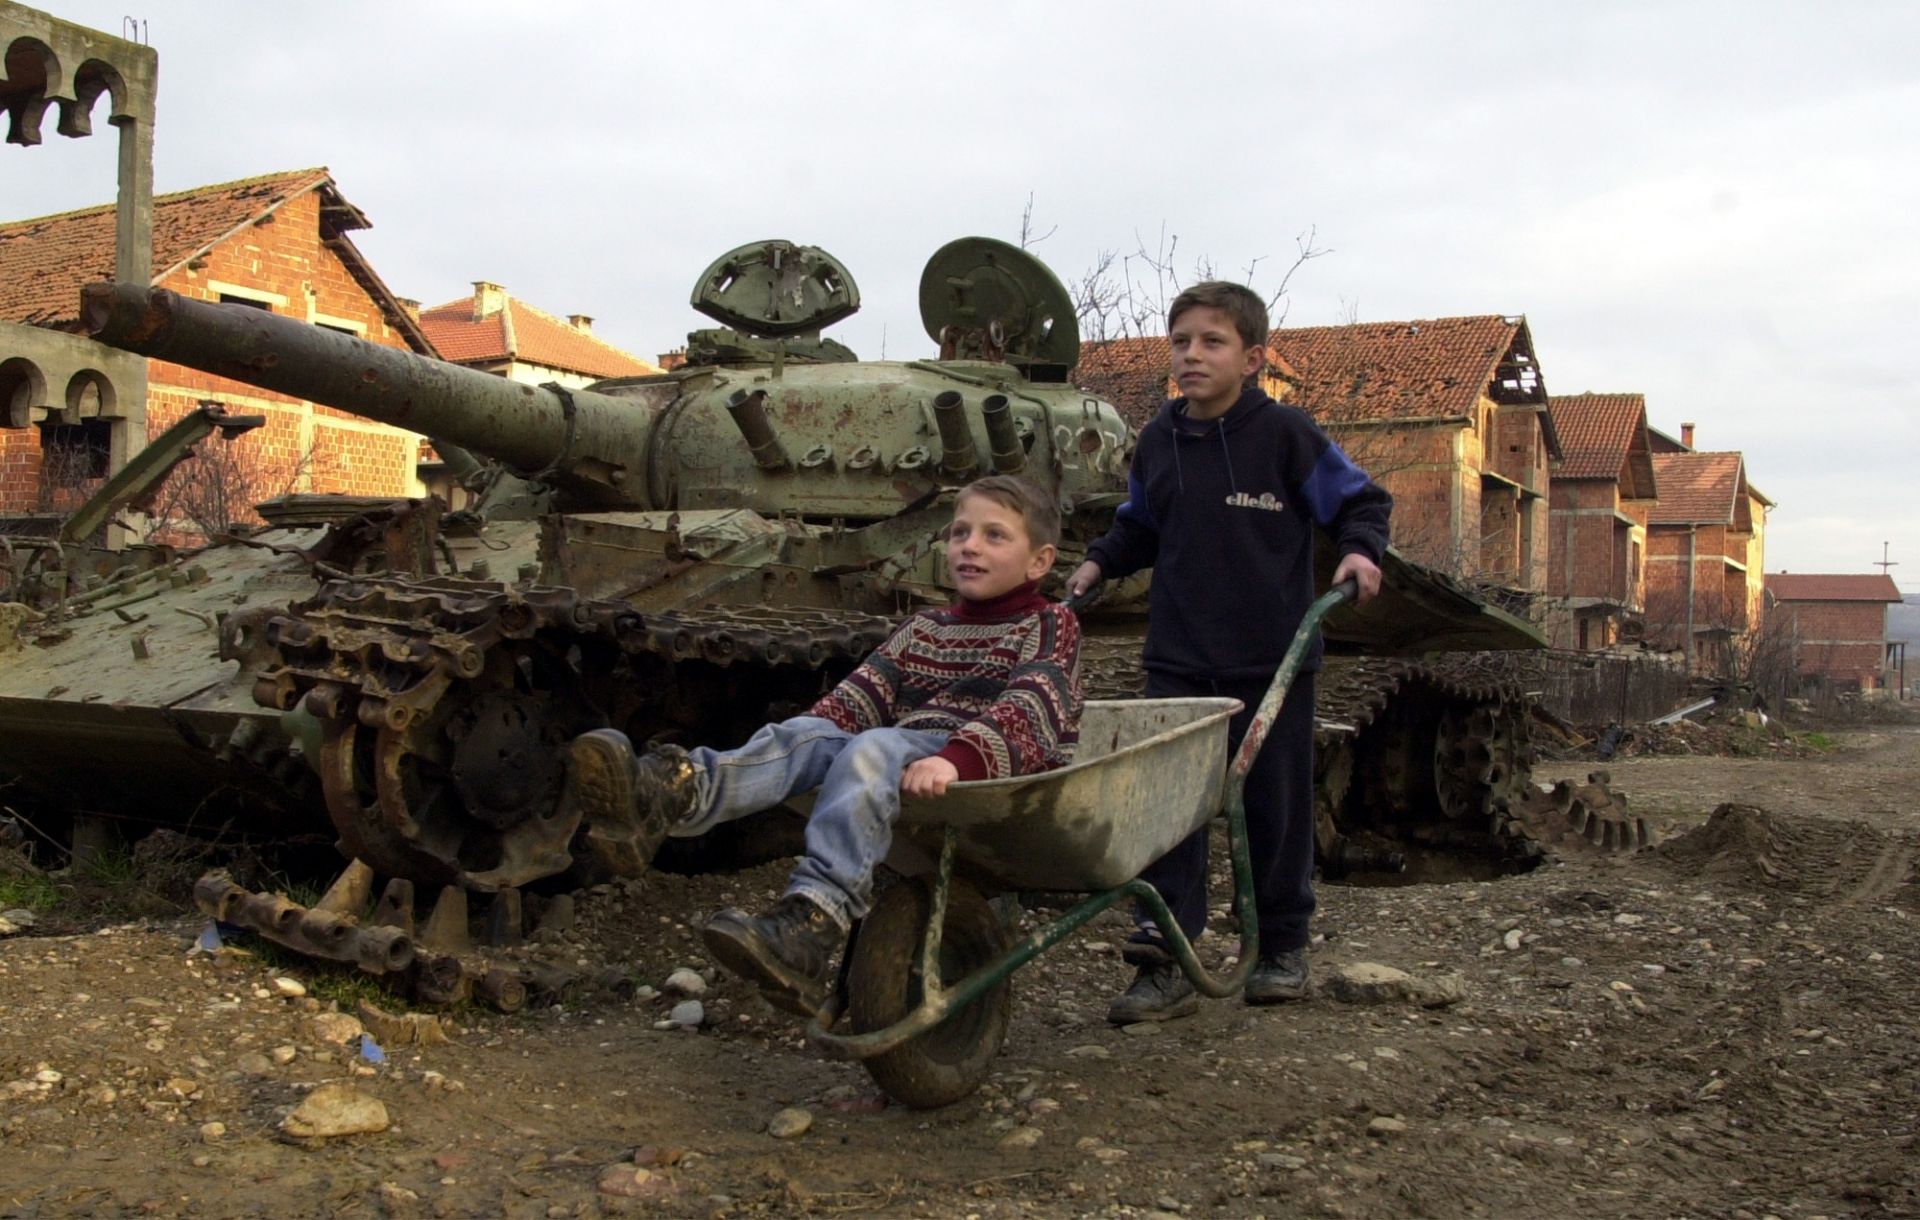 12 януари 2001 г. в Клина, Косово: Момчета играят с количка на едно от 112-те места, където НАТО използва бронебойни снаряди с обеднен уран по време на бомбардировките на Югославия през 1999 г.